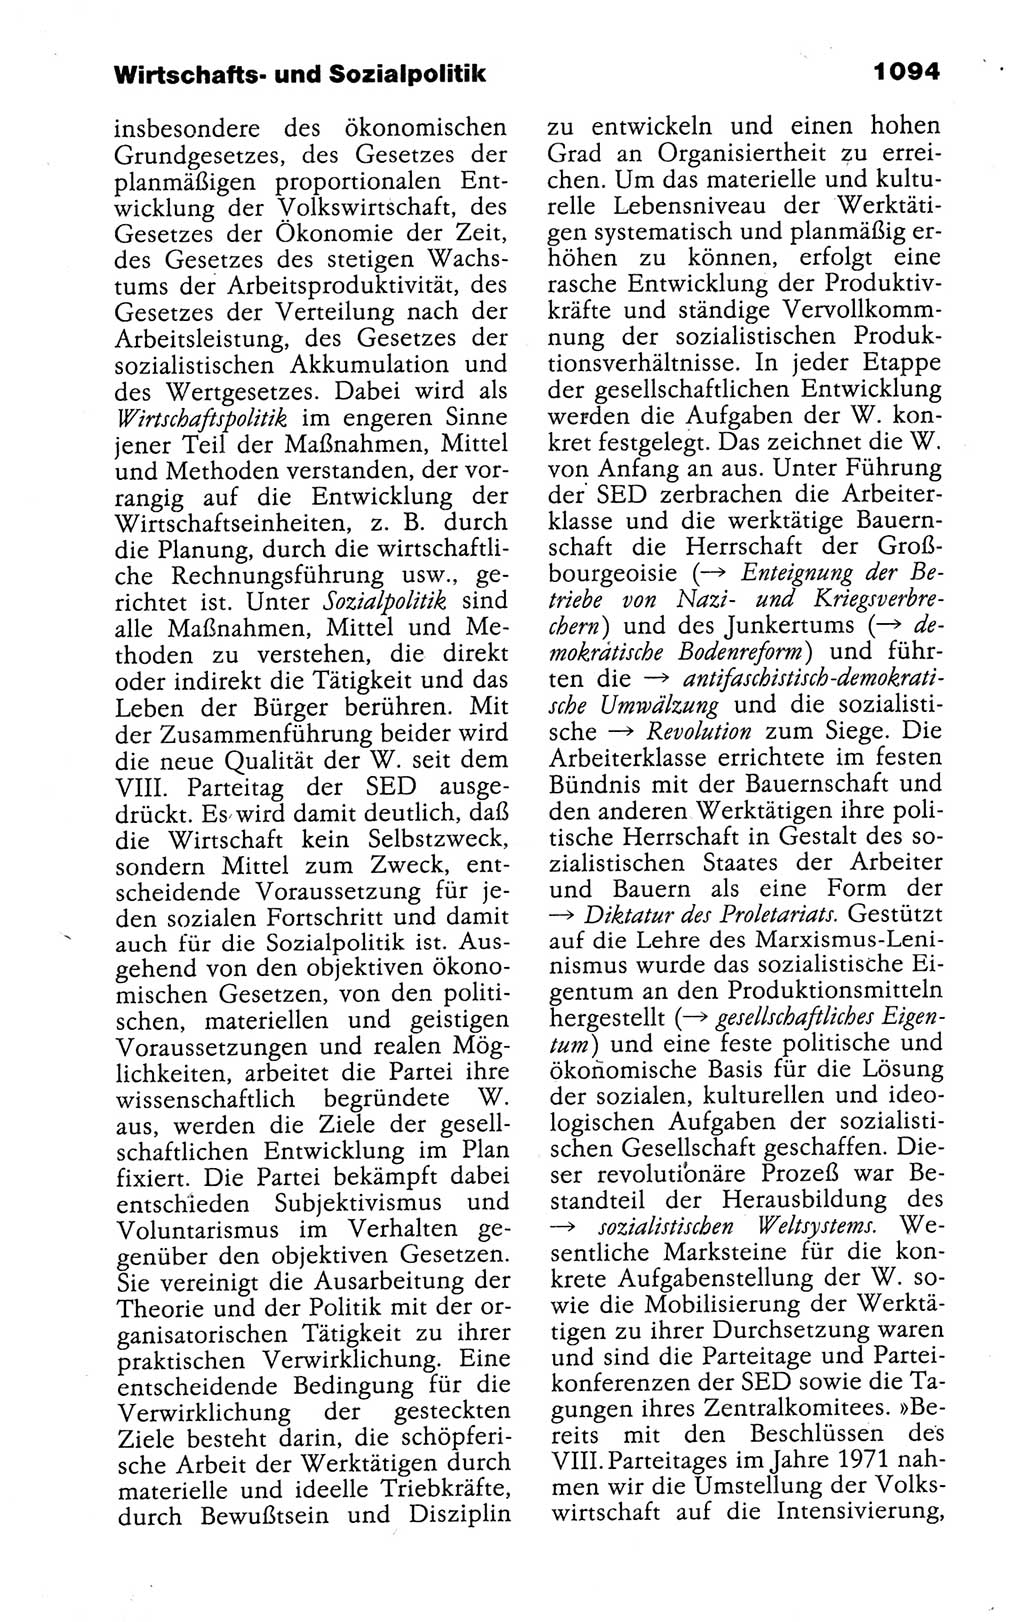 Kleines politisches Wörterbuch [Deutsche Demokratische Republik (DDR)] 1988, Seite 1094 (Kl. pol. Wb. DDR 1988, S. 1094)